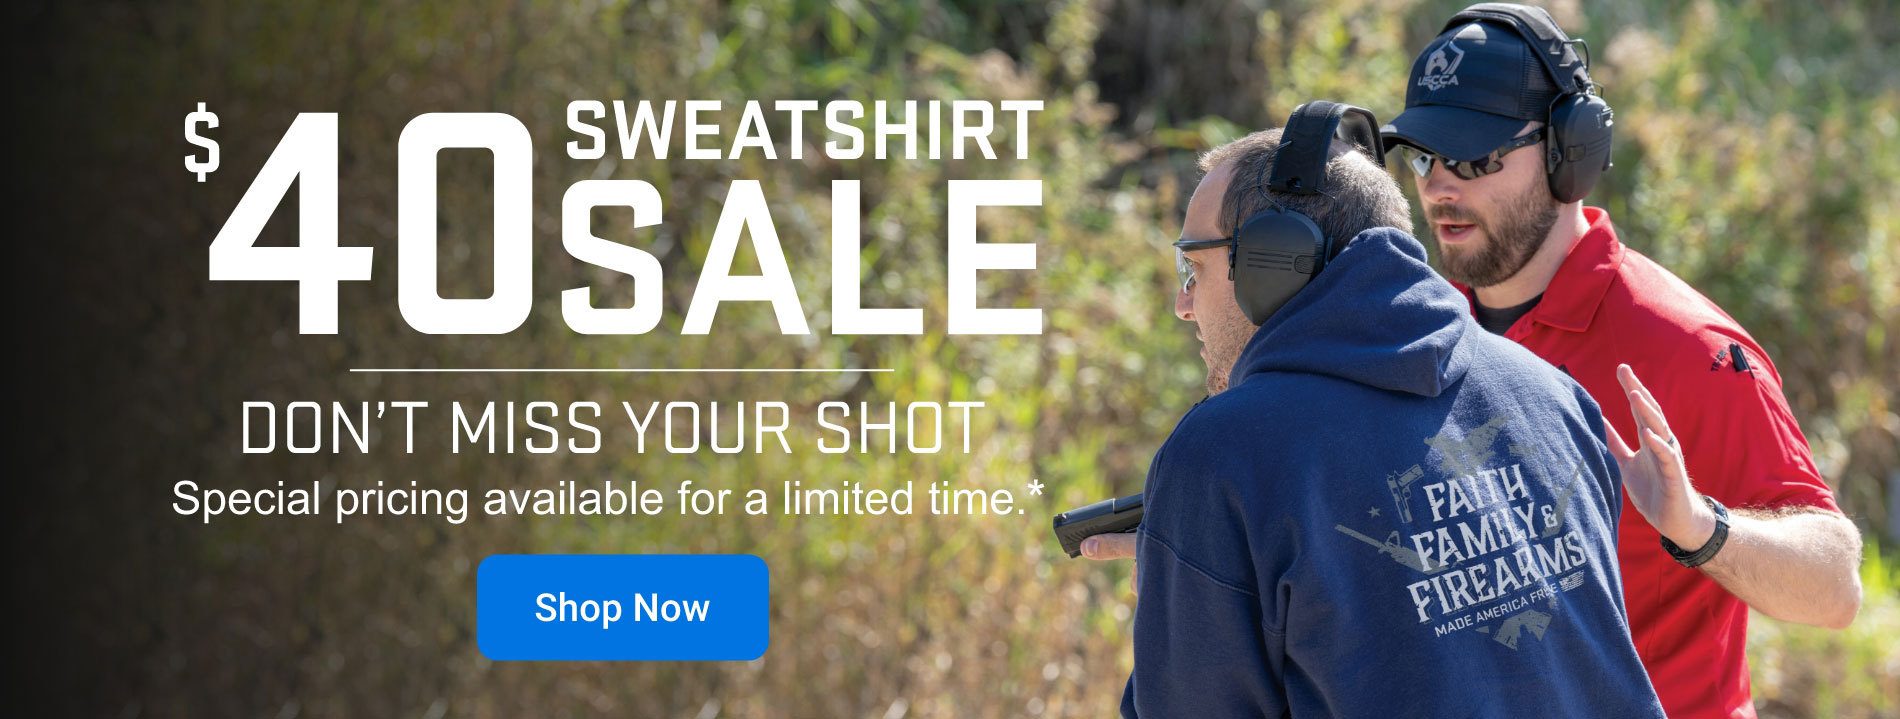 $40 Sweatshirt Sale